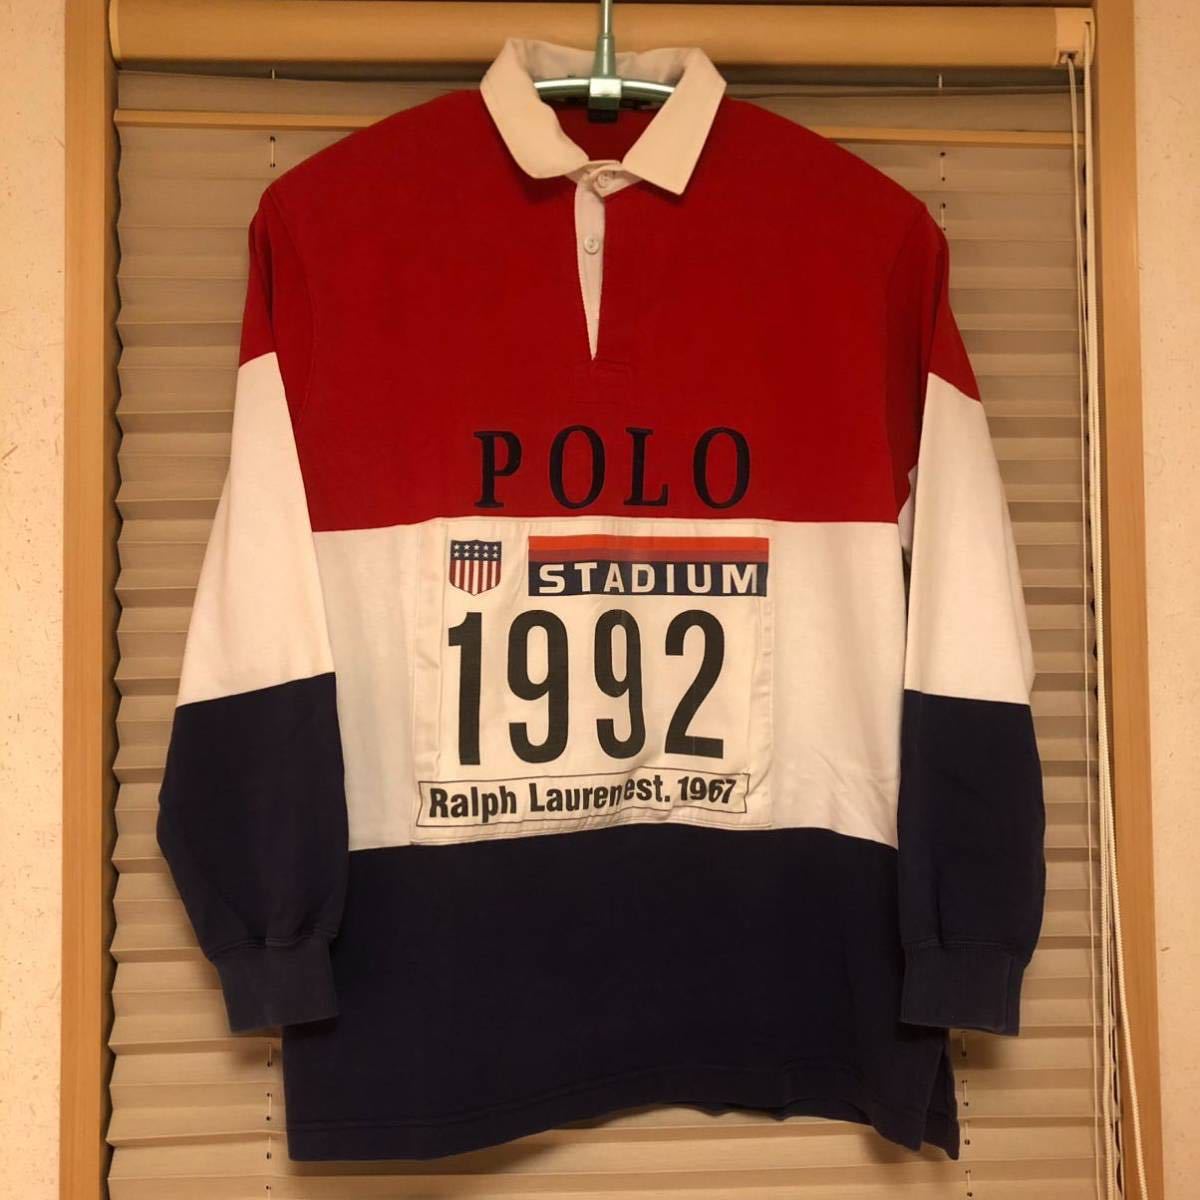 オリジナル Polo Ralph Lauren 1992 stadium スタジアム ポロシャツ shirt sport rlx rrl  country 1993 OG オリンピック